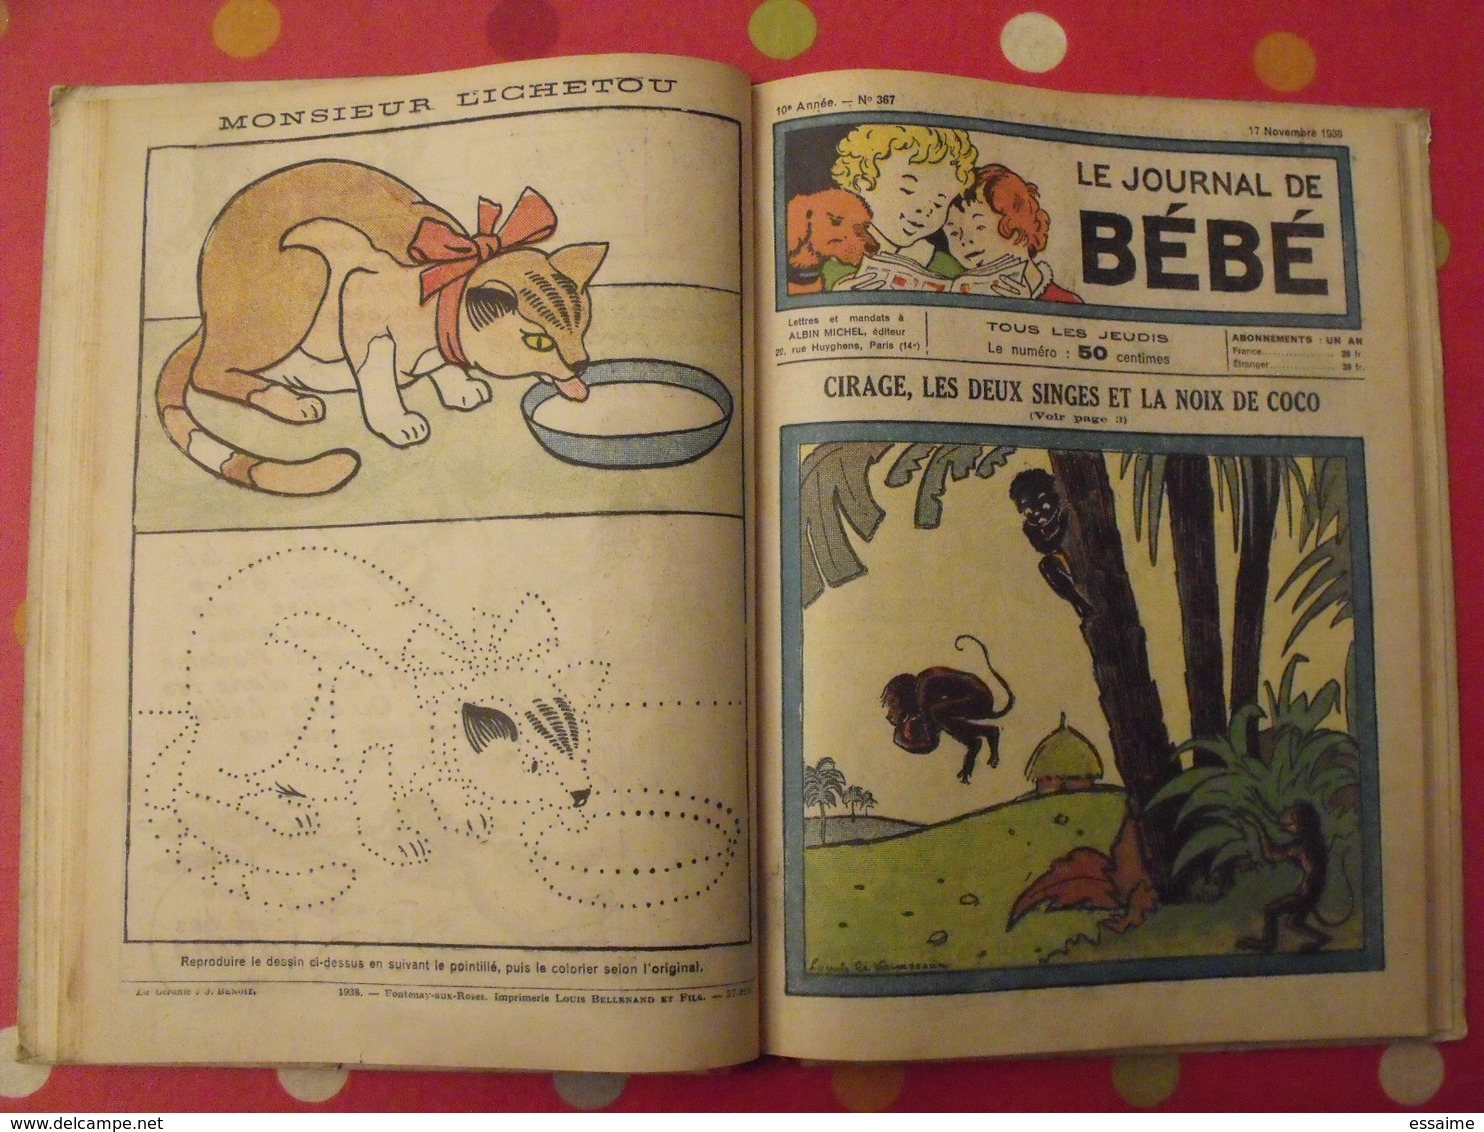 recueil reliure de 12 revues "le journal de bébé". 4ème trimestre 1938. pouf davine rob-vel rotman rogelon pélik polydor